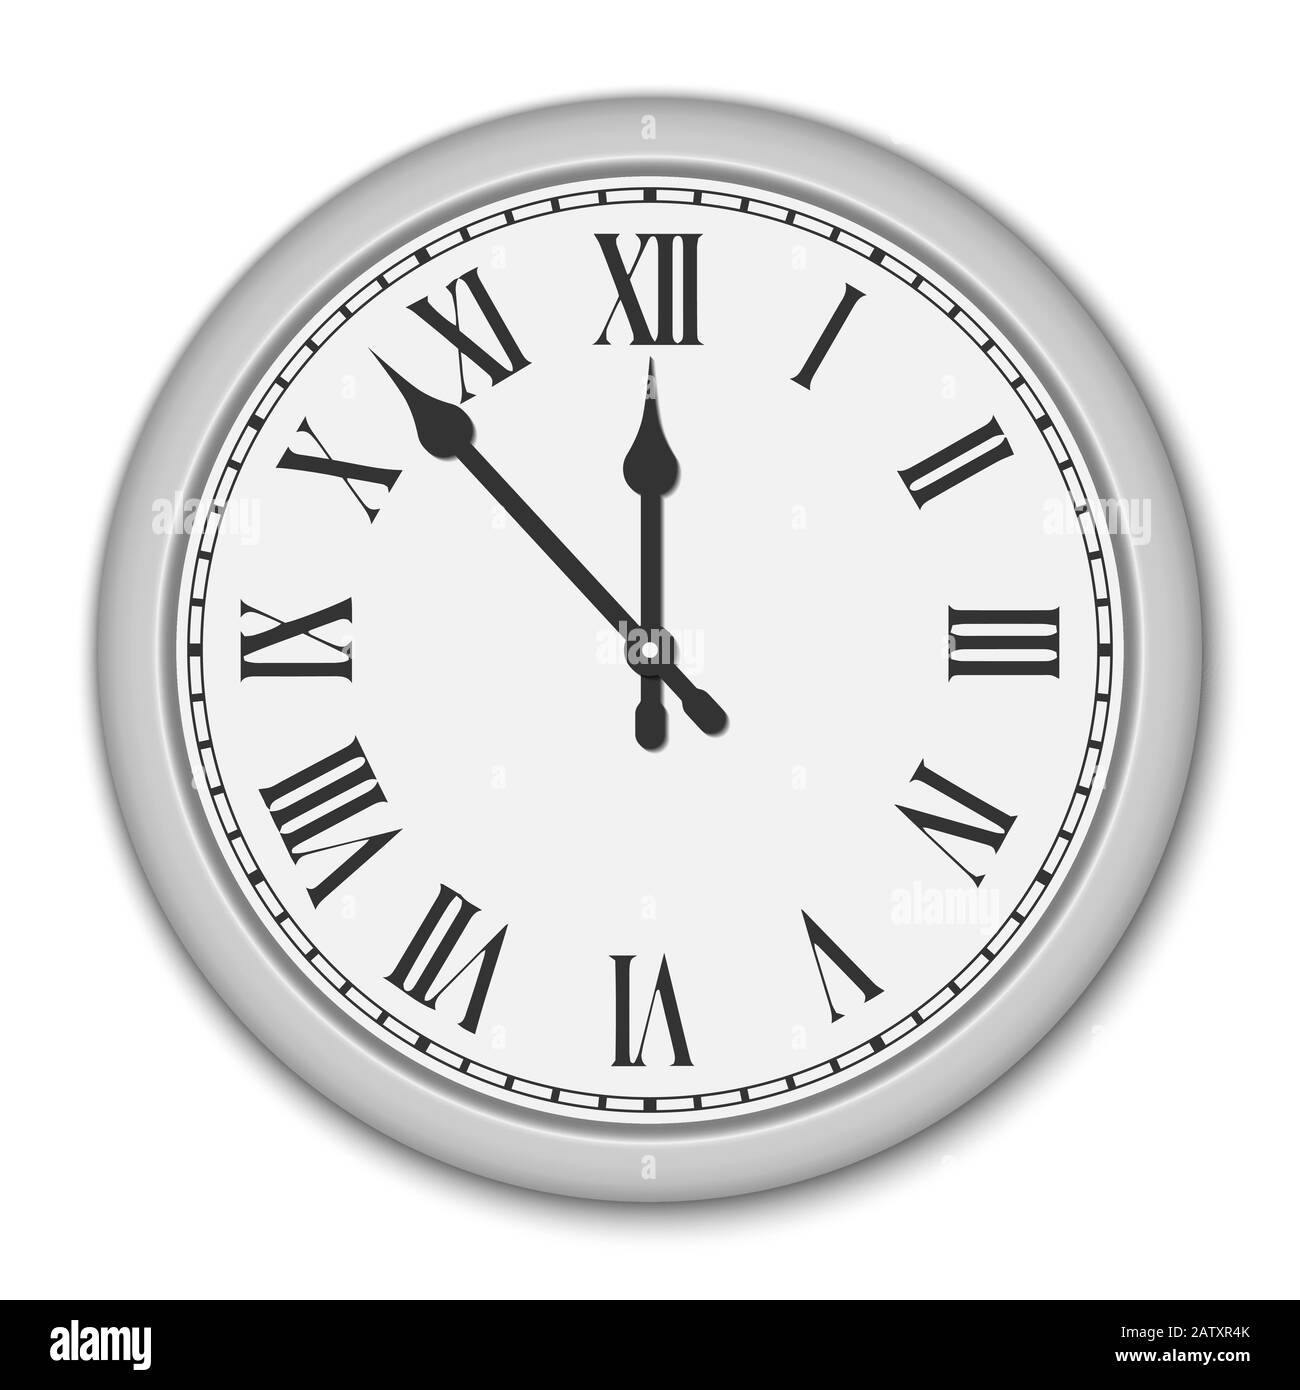 Quadrante dell'orologio con numeri romani Immagine e Vettoriale - Alamy